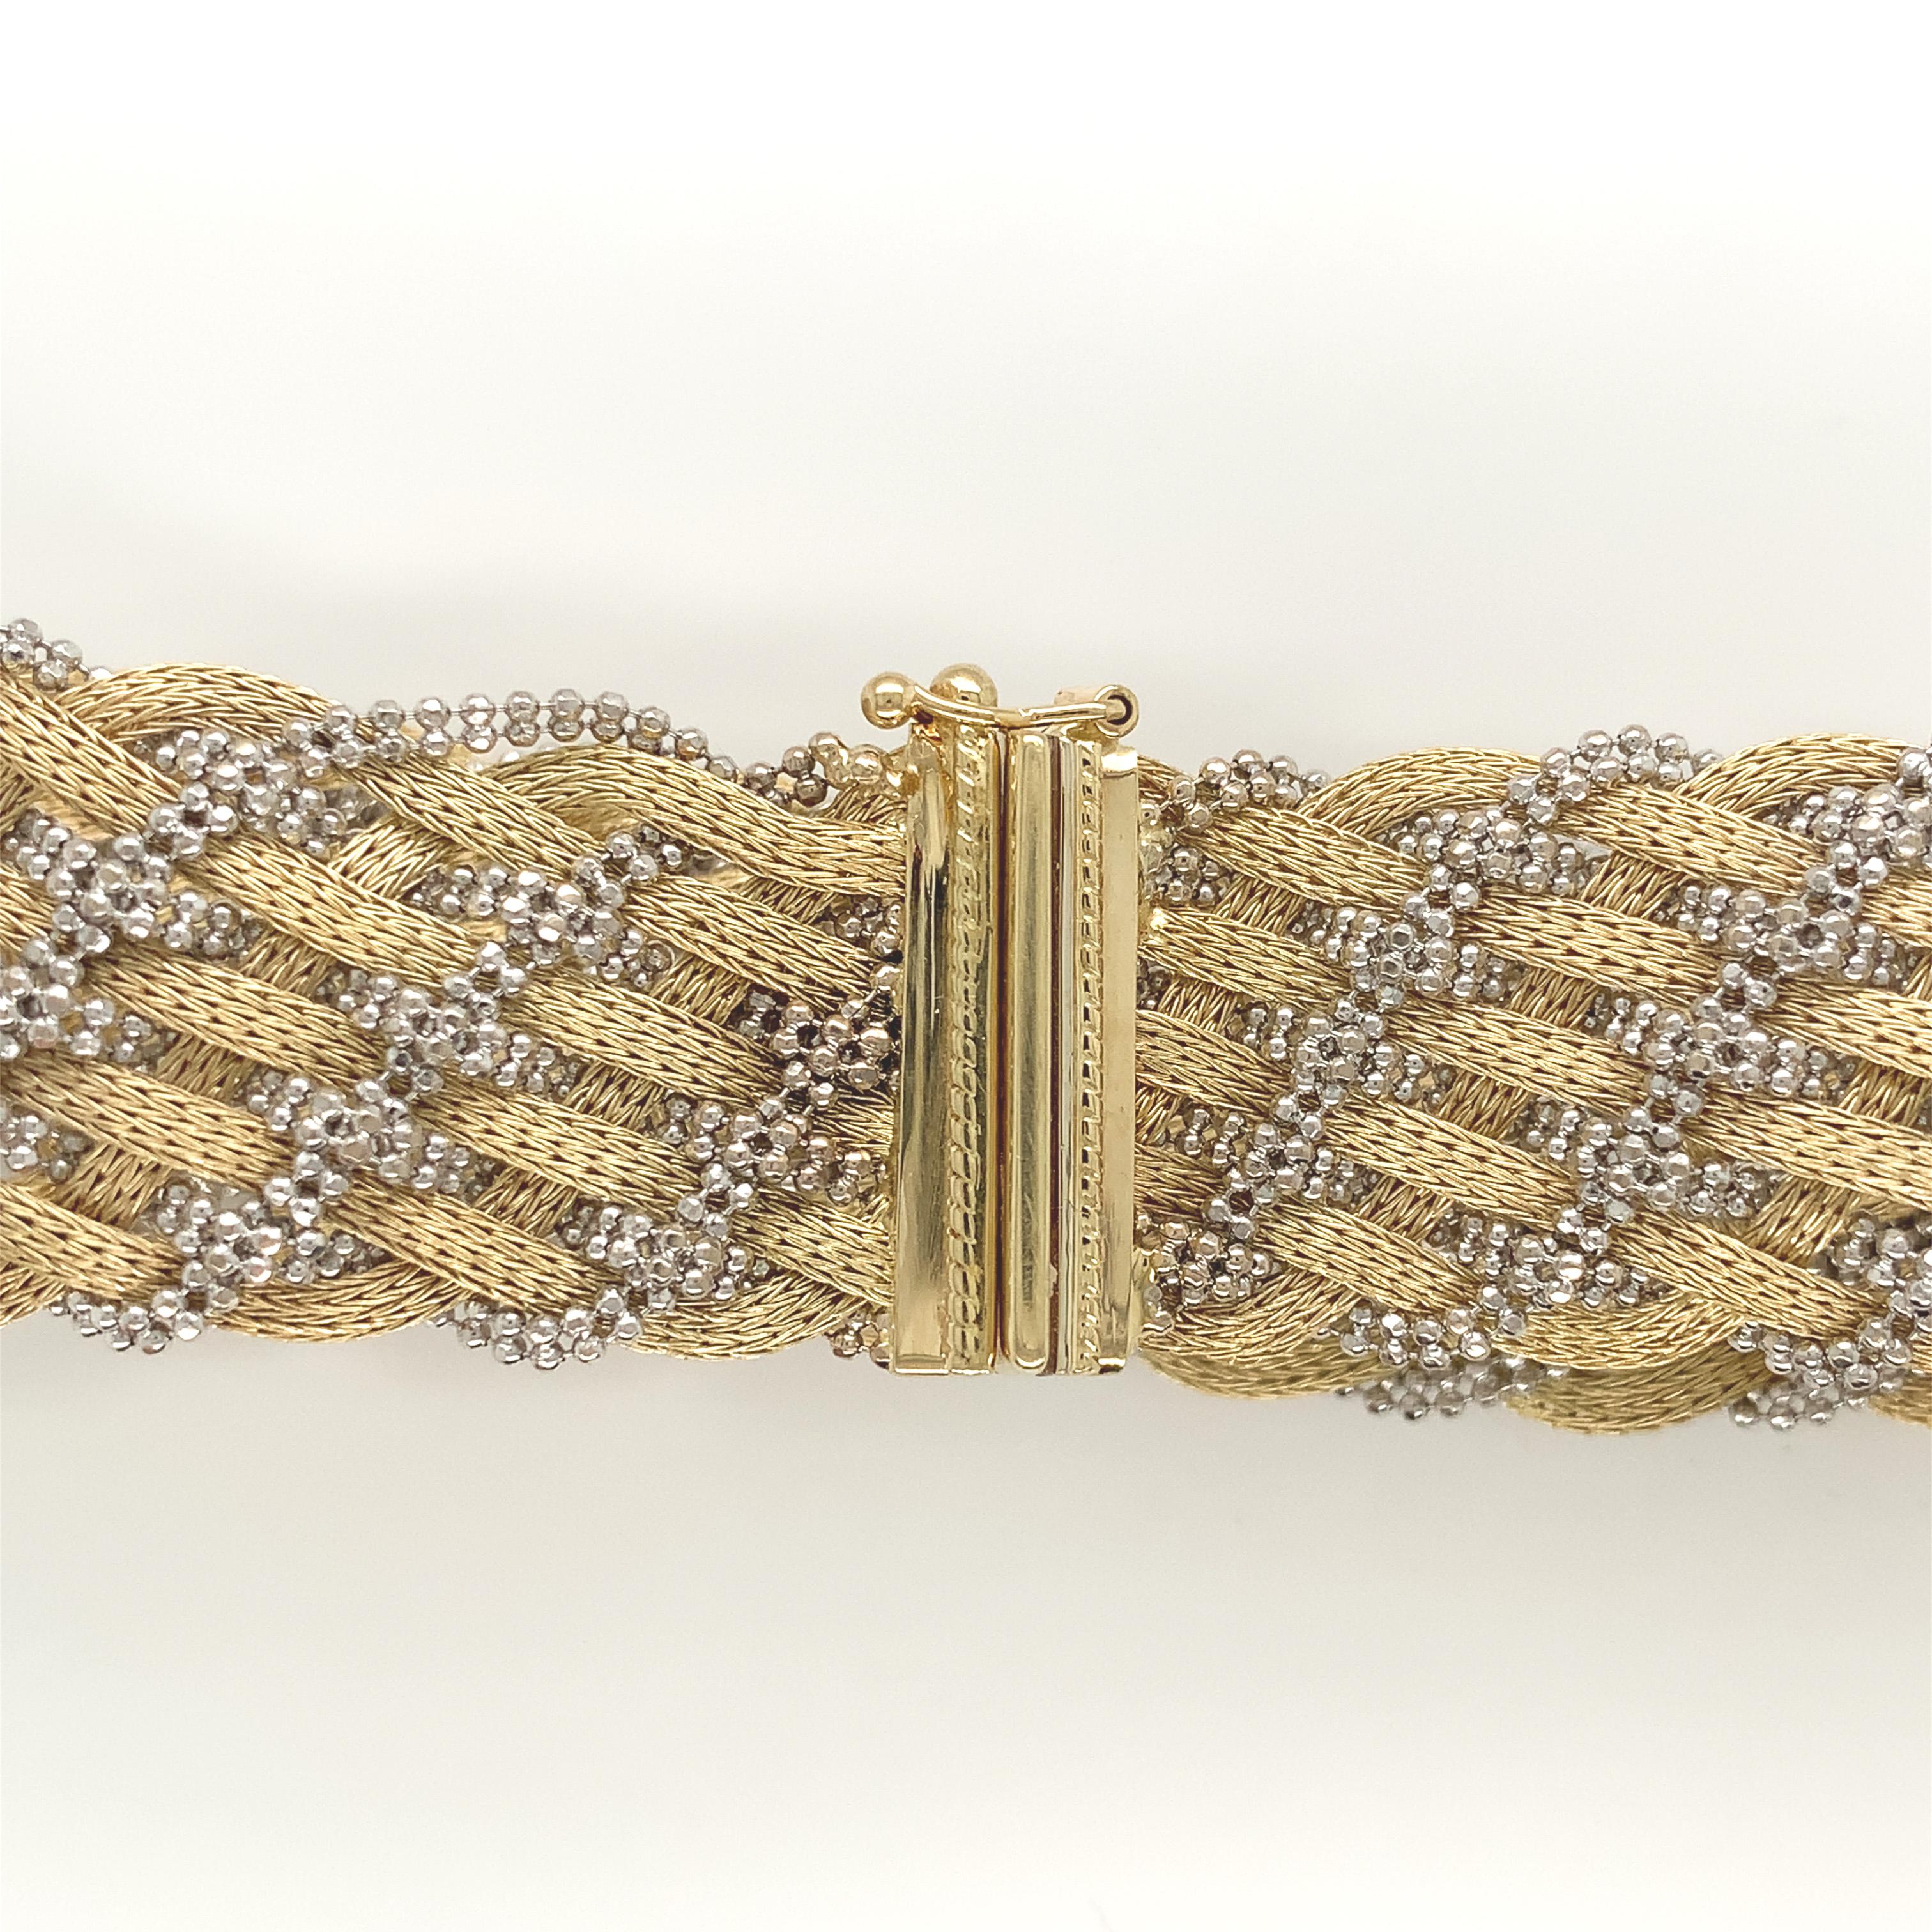 Armband aus 14K Gelb- und Weißgold, hergestellt in Italien von Carlo Rezzadore. Es gibt ausgefallene Ketten in einer Art Korbgeflechtmuster. Das Armband ist 3/4